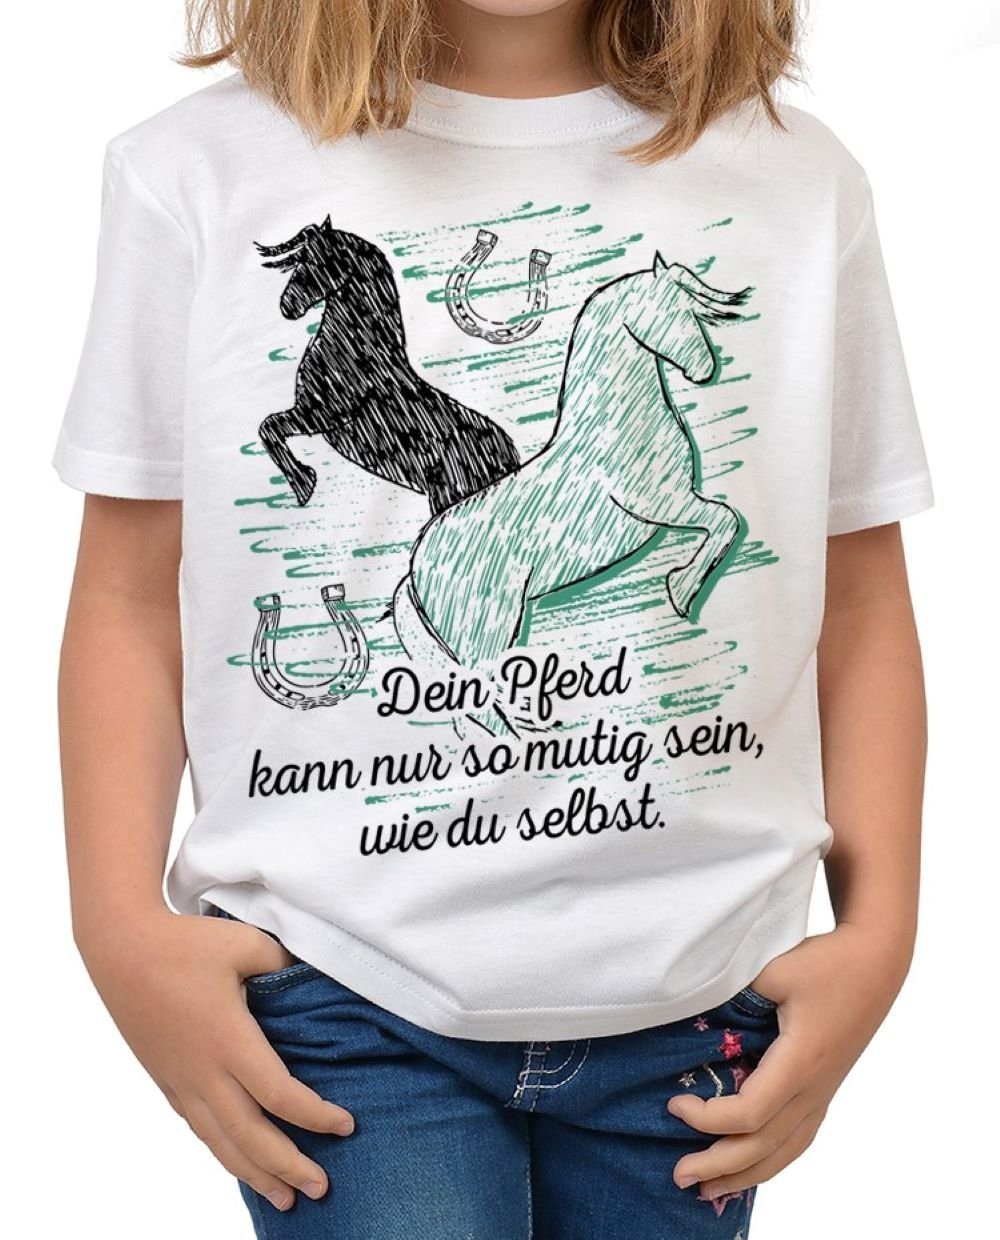 kann wie Shirt du - T-Shirt Tini Sprüche Dein : Shirt Shirts sein, nur Kinder Pferde Motiv so selbst Sprüche Pferde mutig Kindershirt Pferd